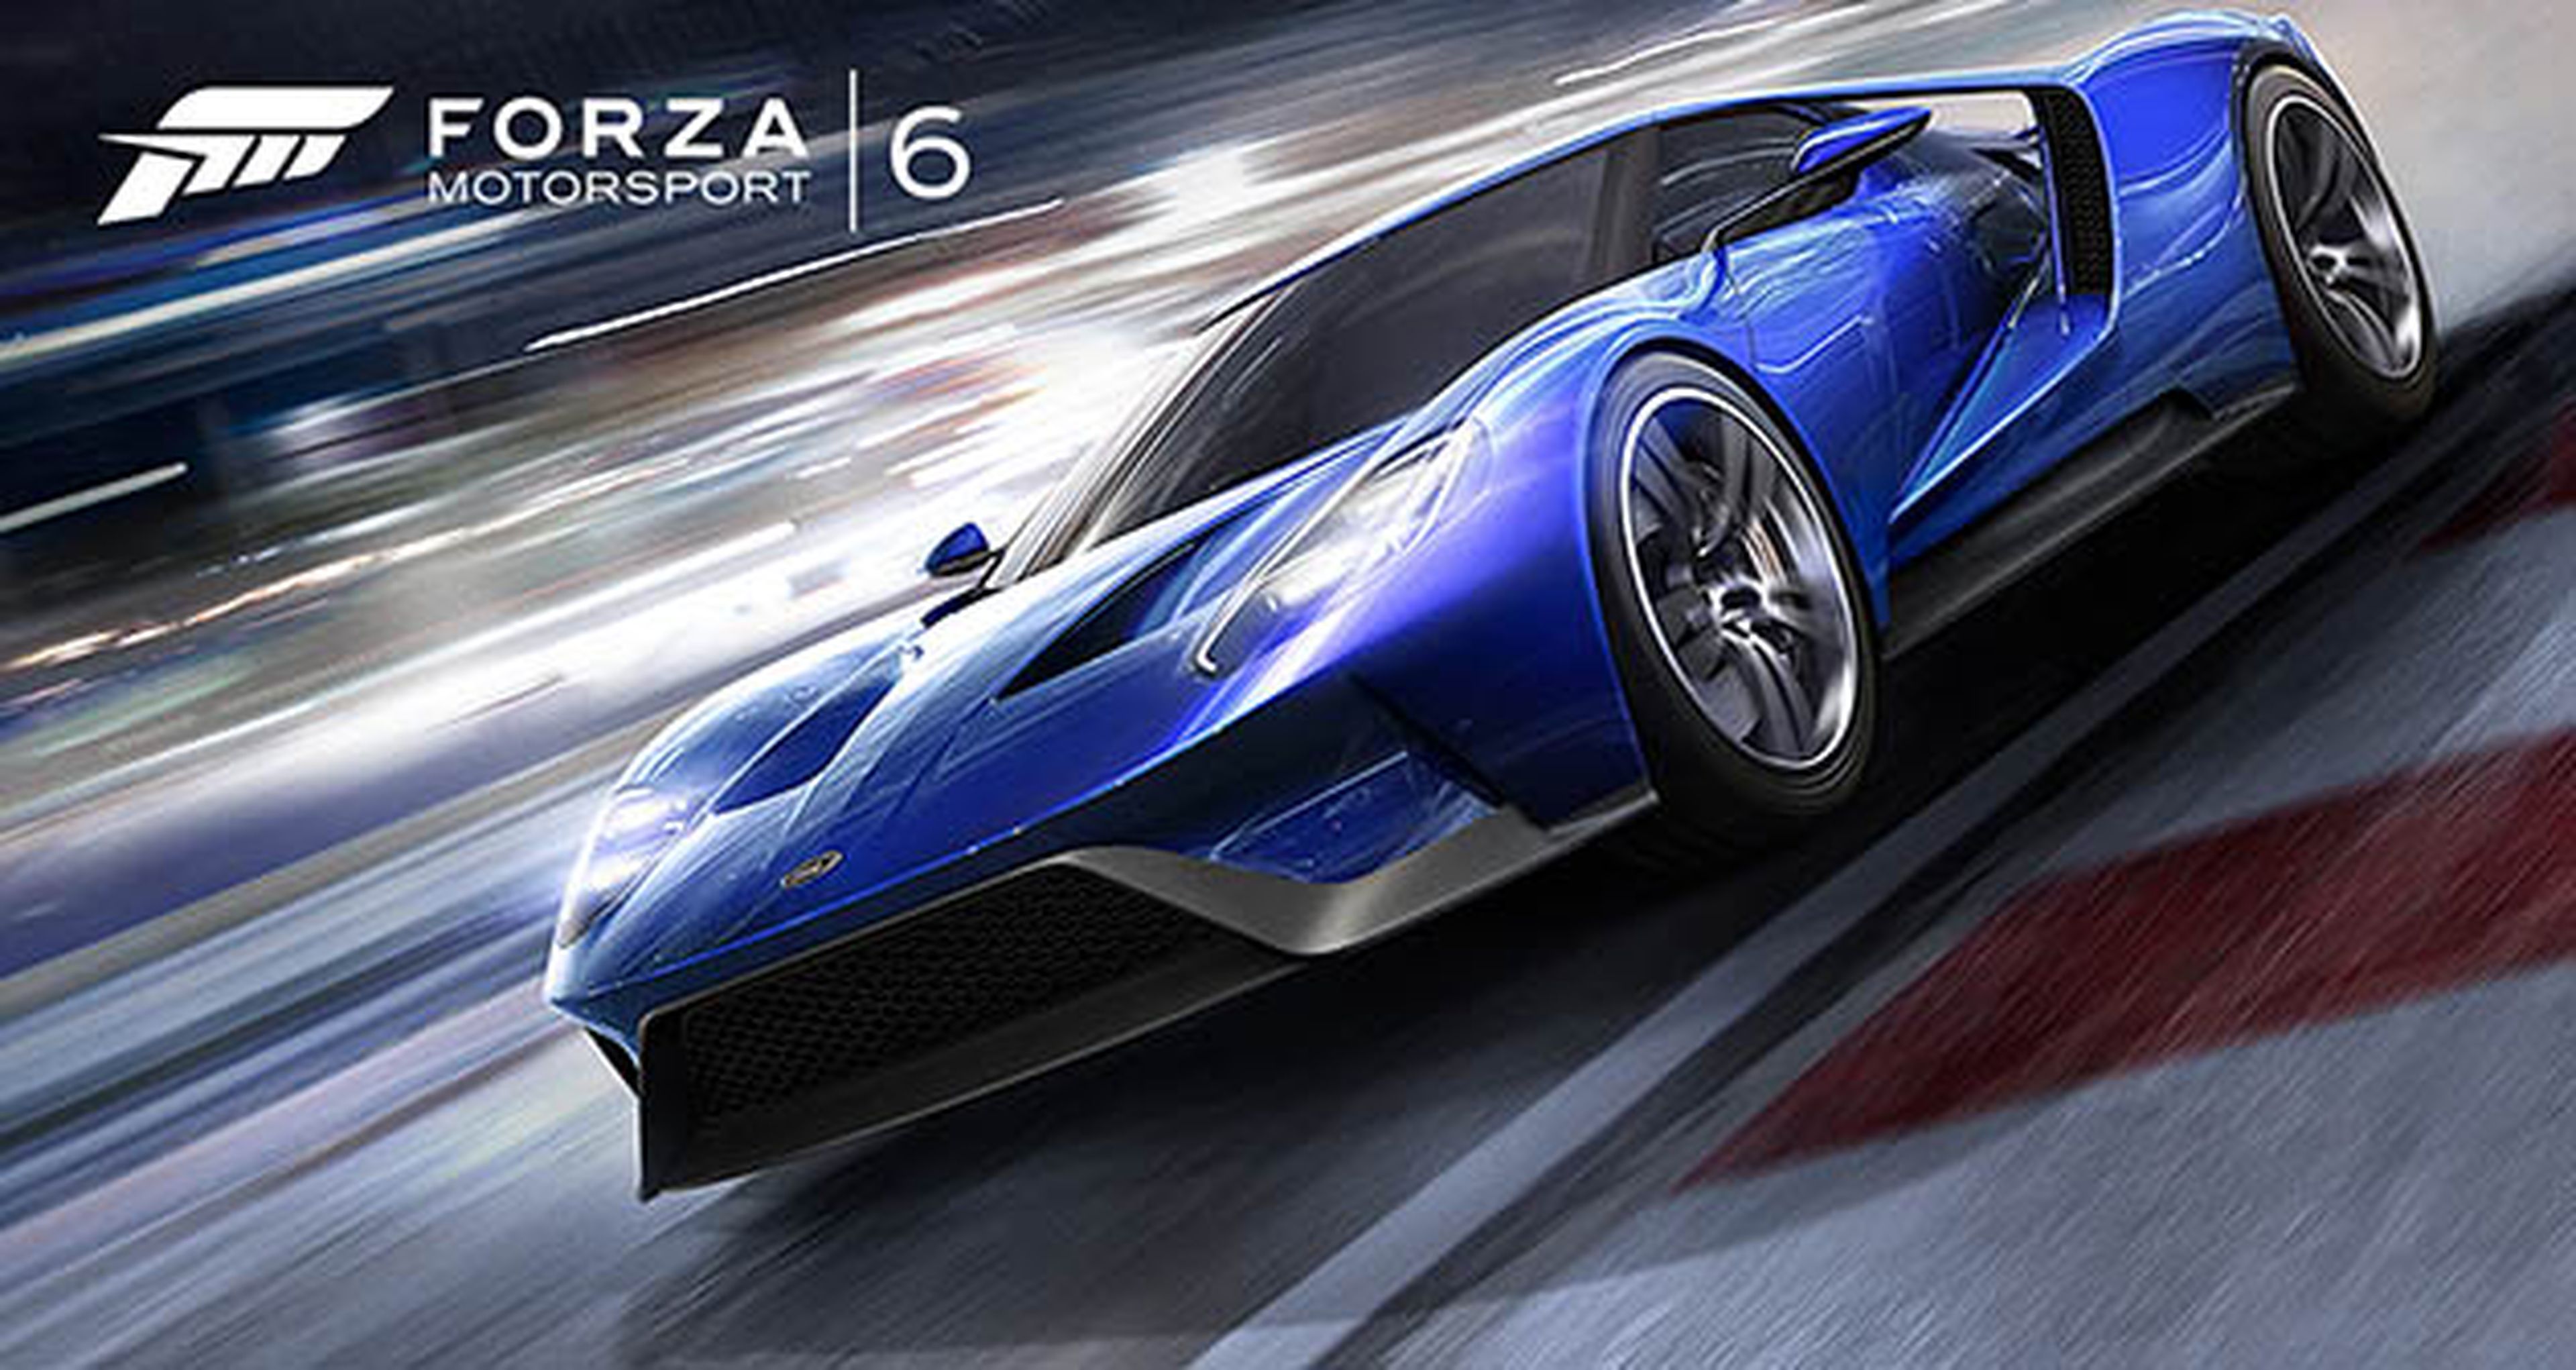 Forza Motorsport 6, así sufren daños sus coches